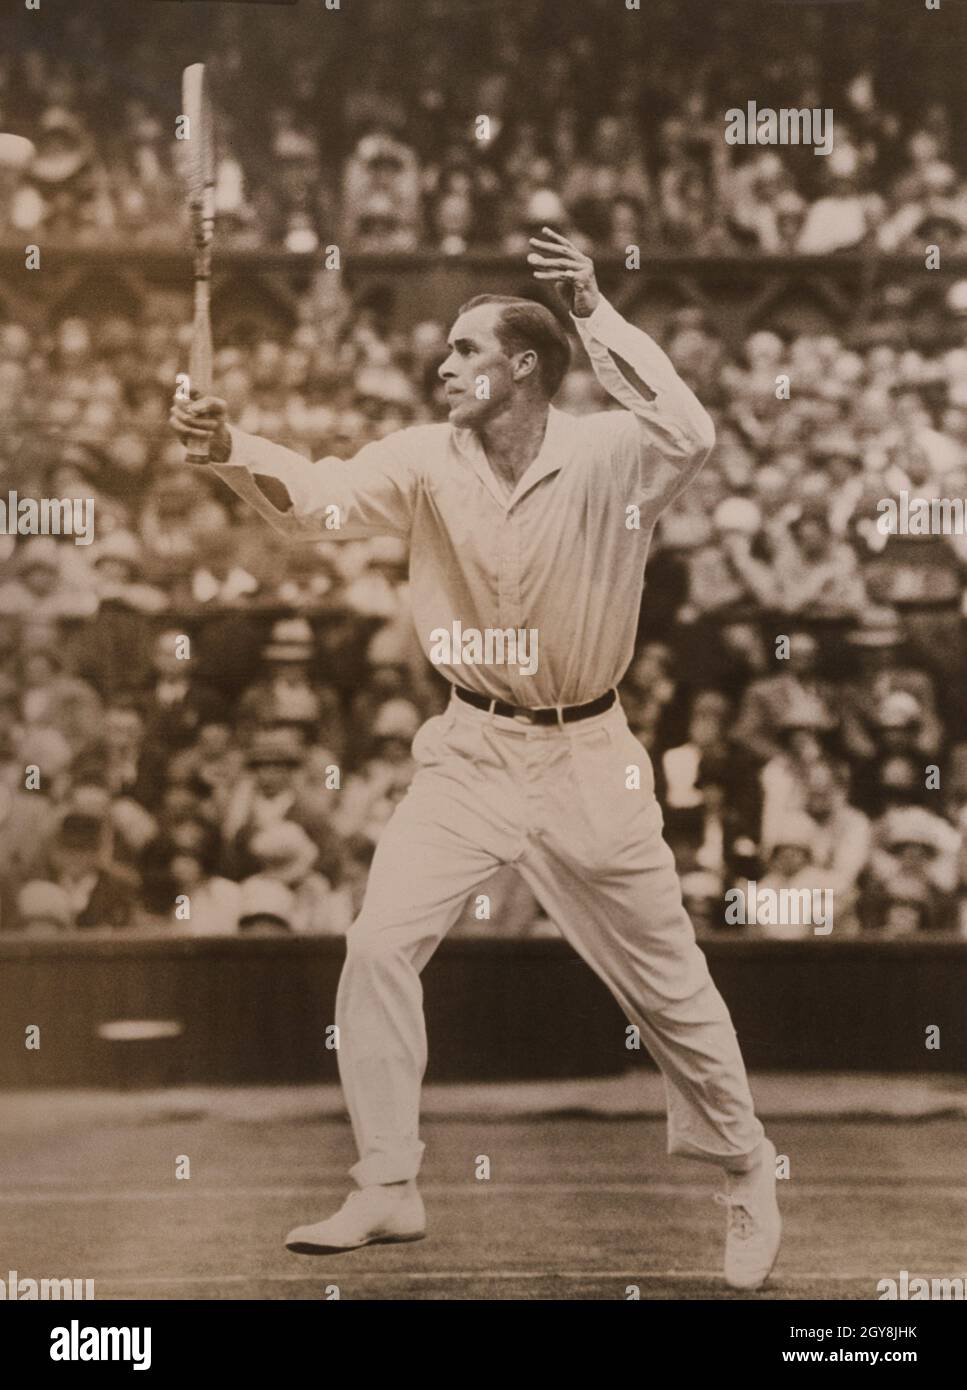 Giocatore di tennis americano Bill Tilden durante la partita di tennis, i campionati, Wimbledon, All England Lawn Tennis and Croquet Club, Wimbledon, Londra, Inghilterra, Regno Unito, Sottobosco e sottobosco, 1930 Foto Stock